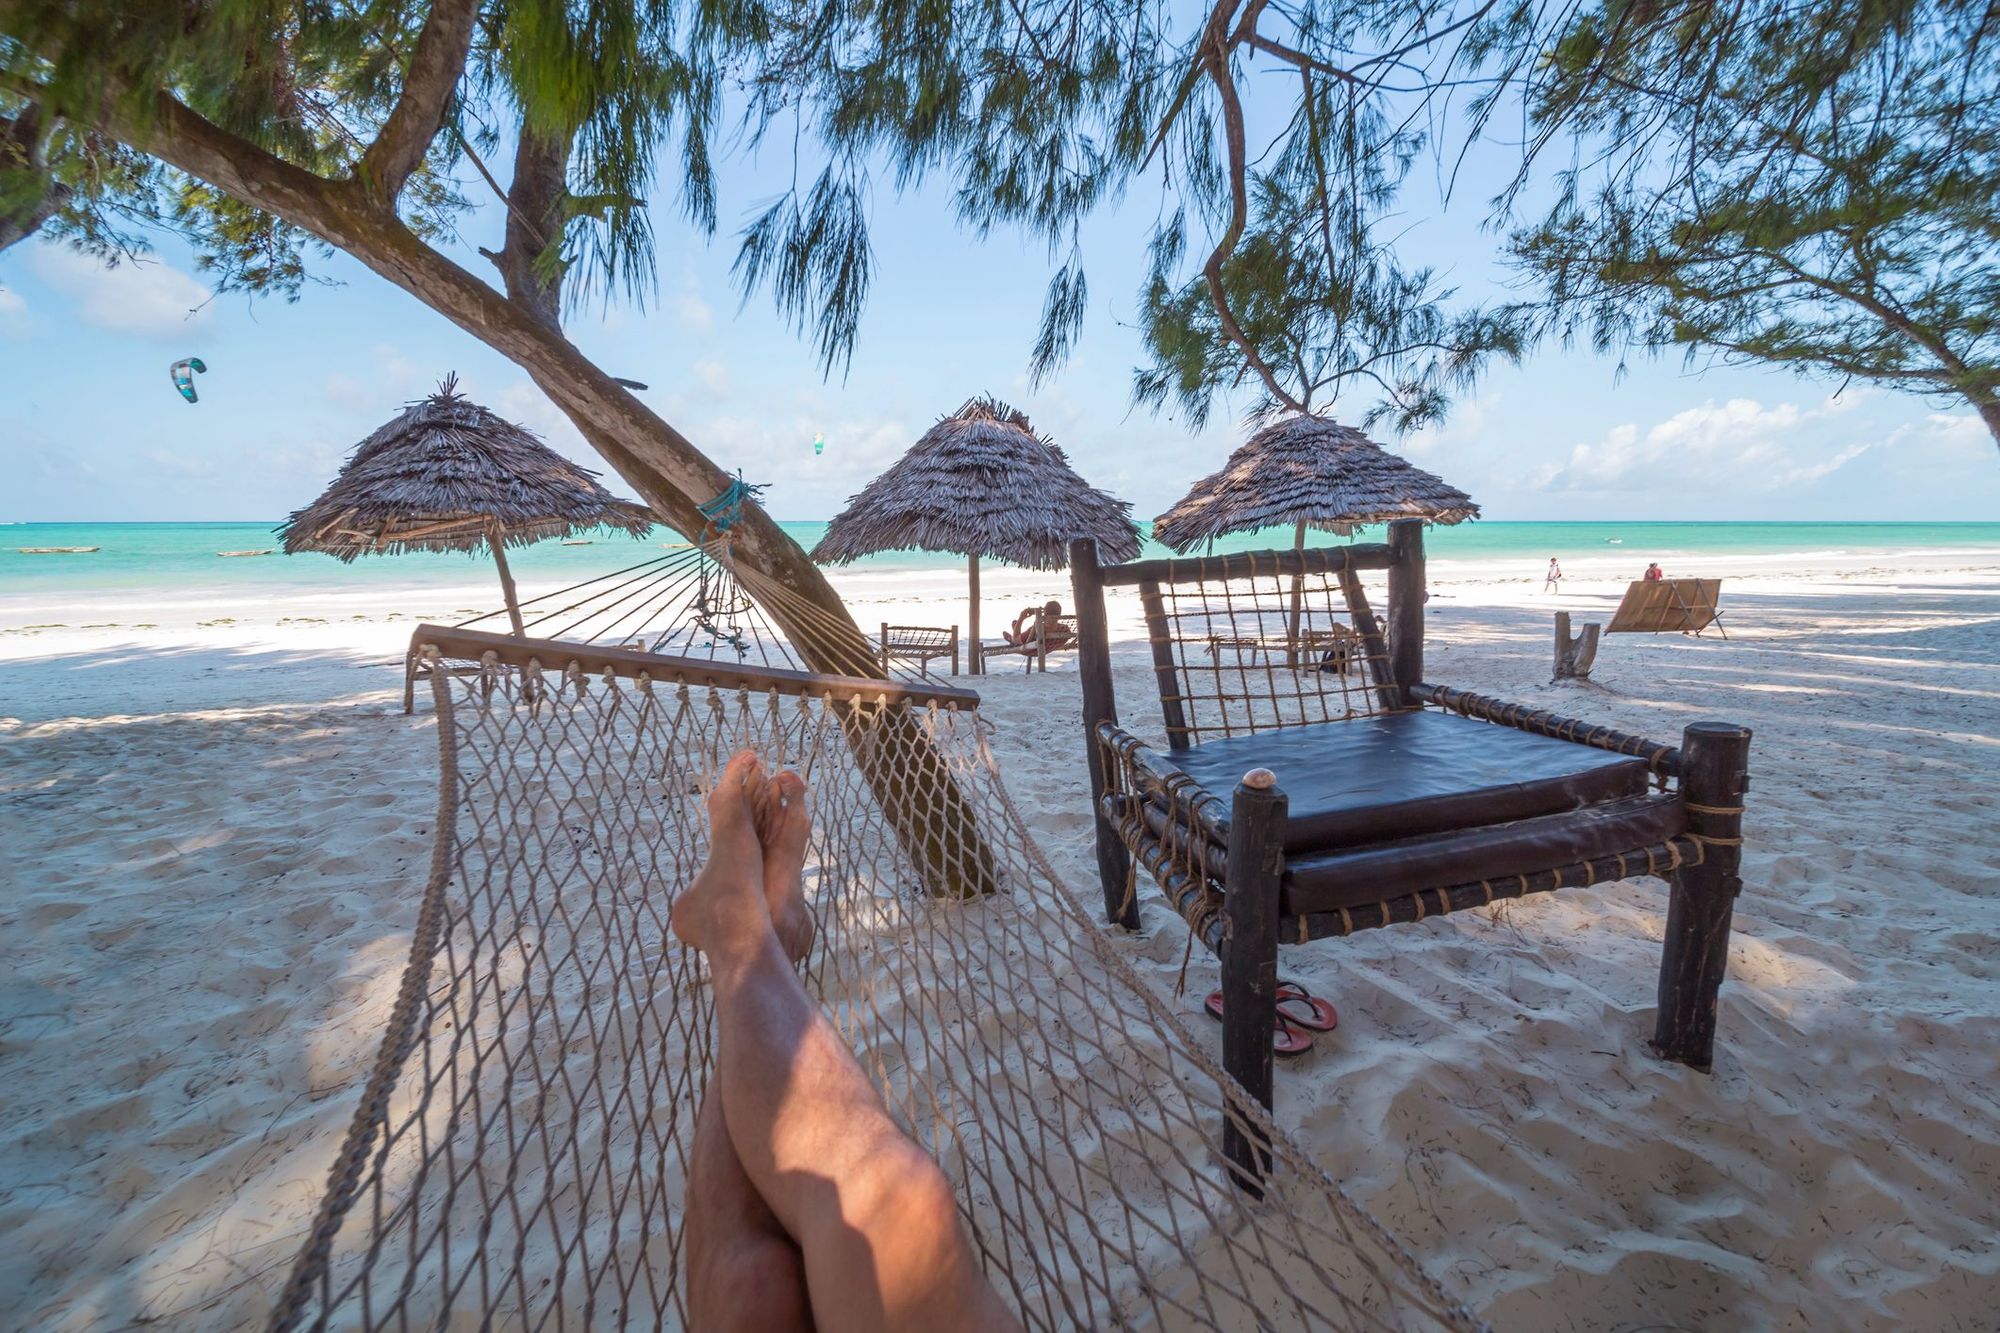 A tourist relaxes on a beach in Zanzibar.